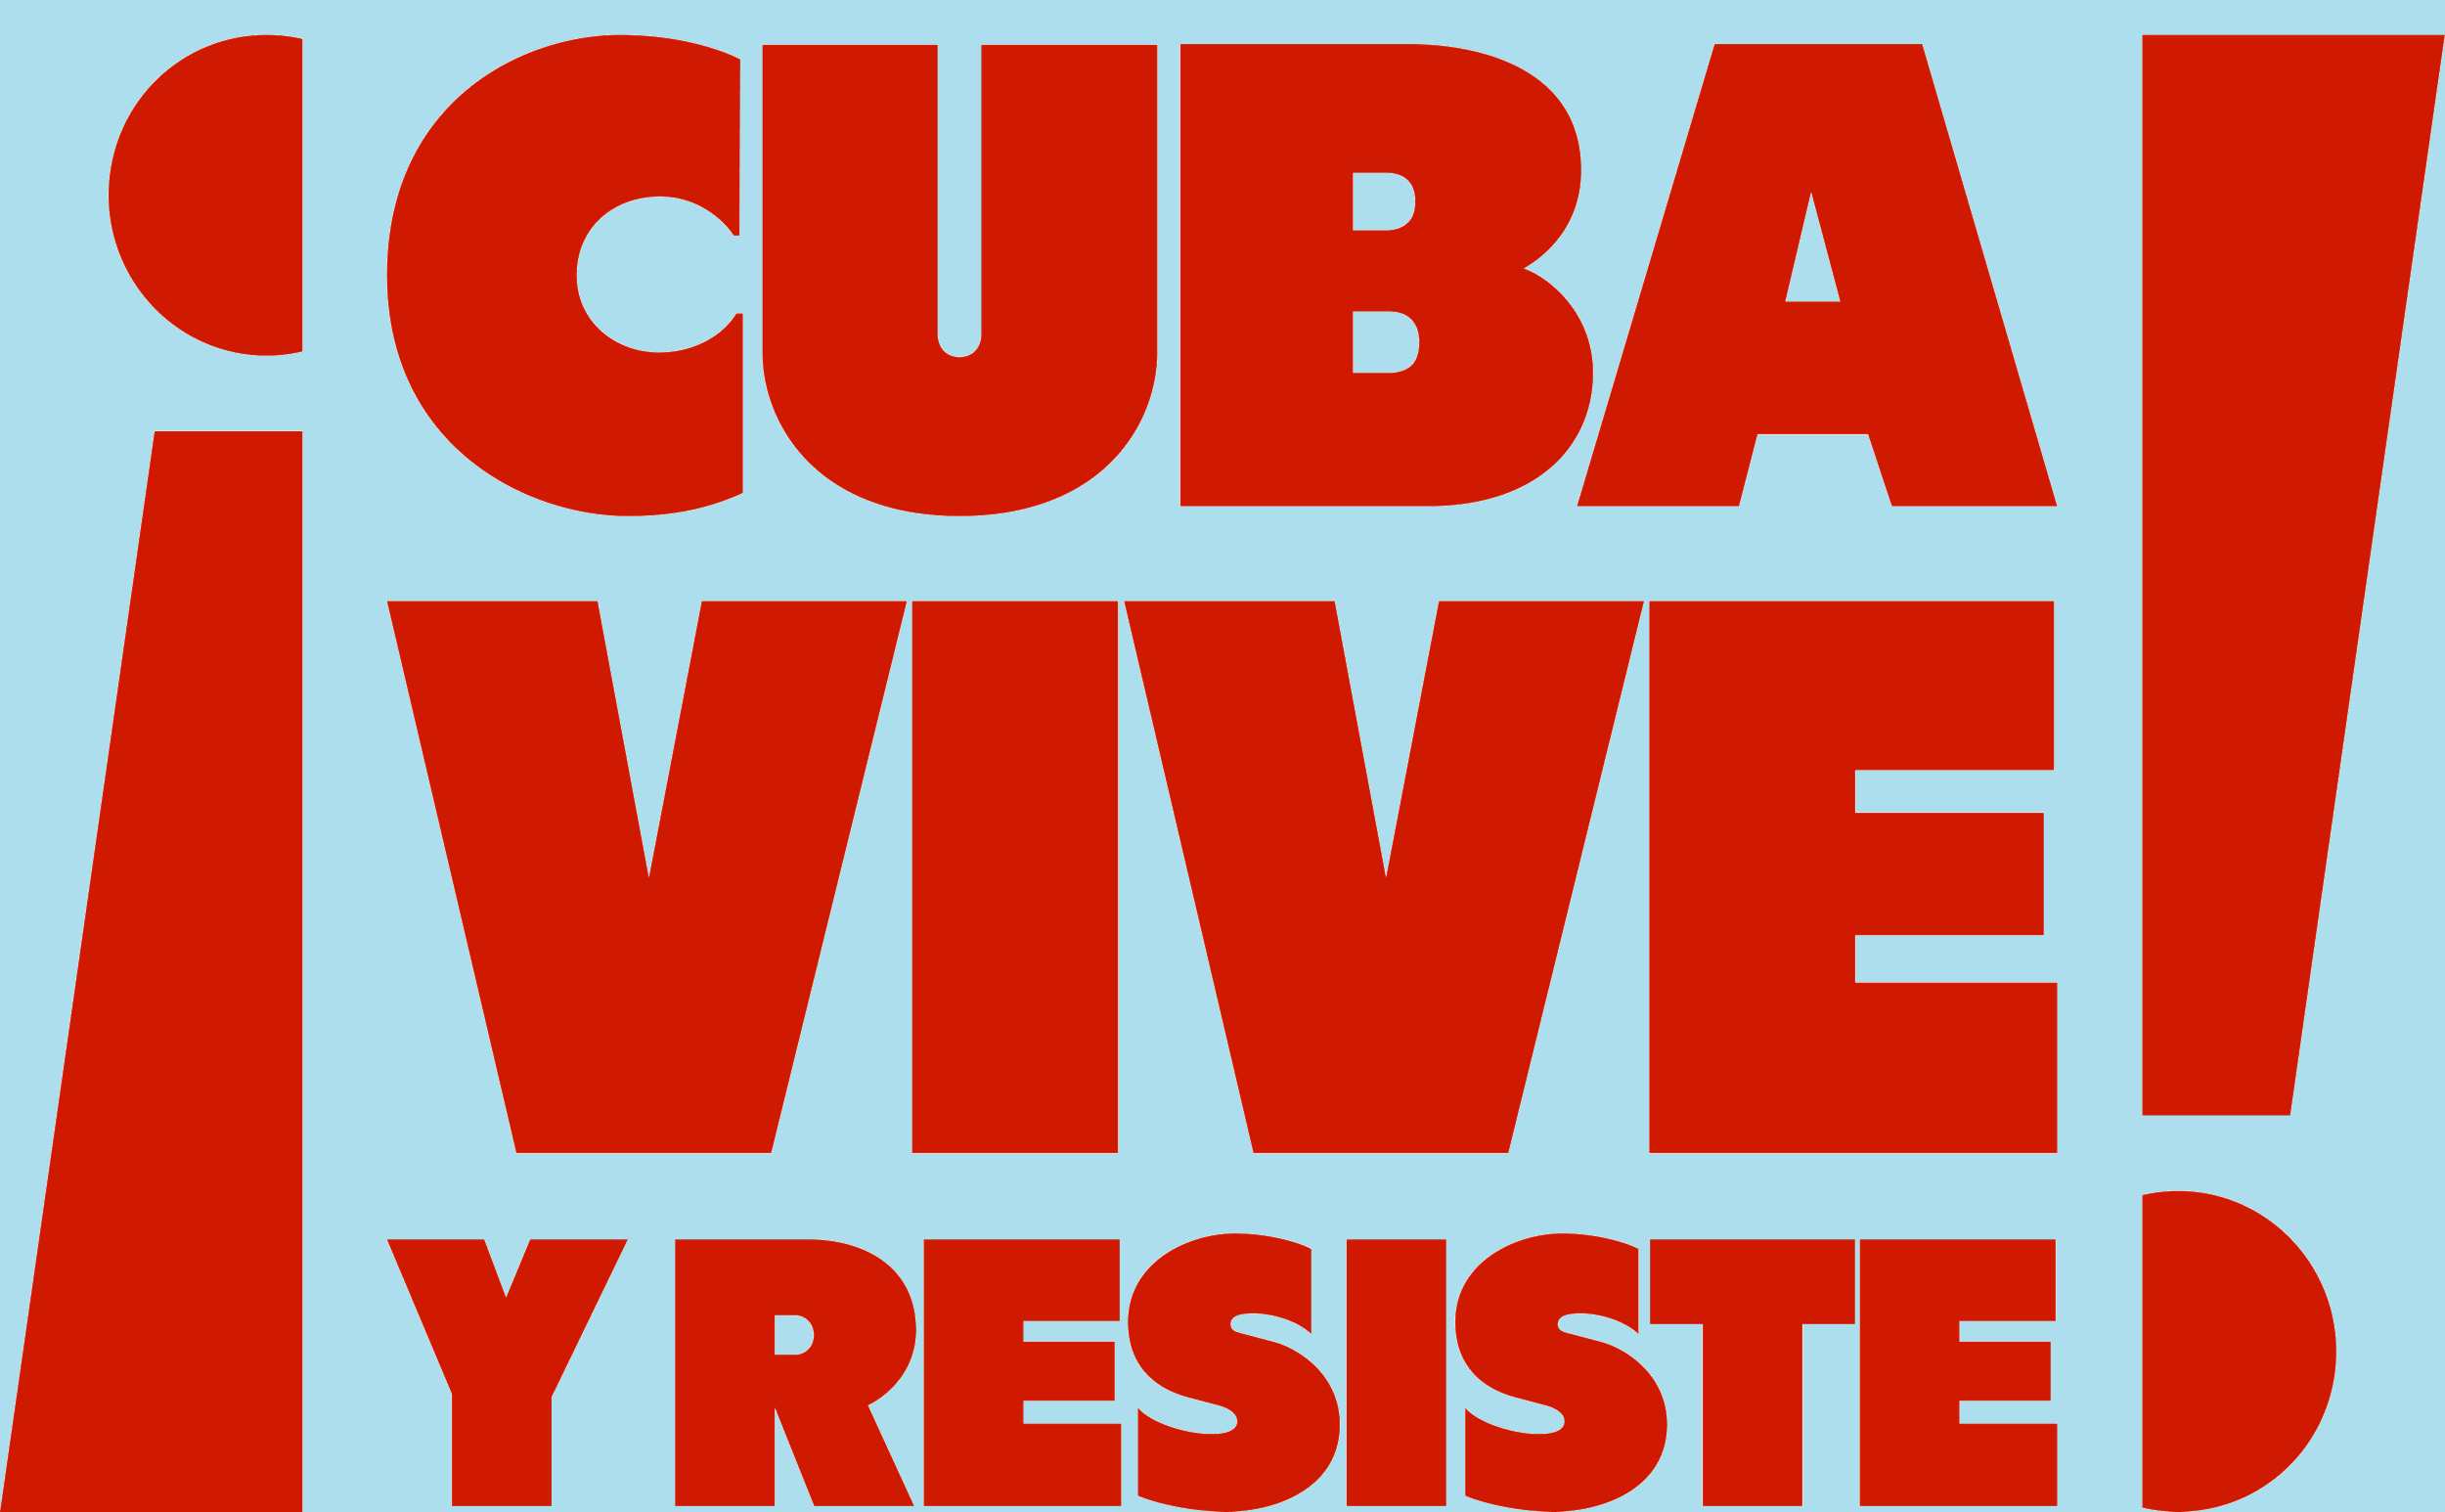 Cuba vive y Resiste